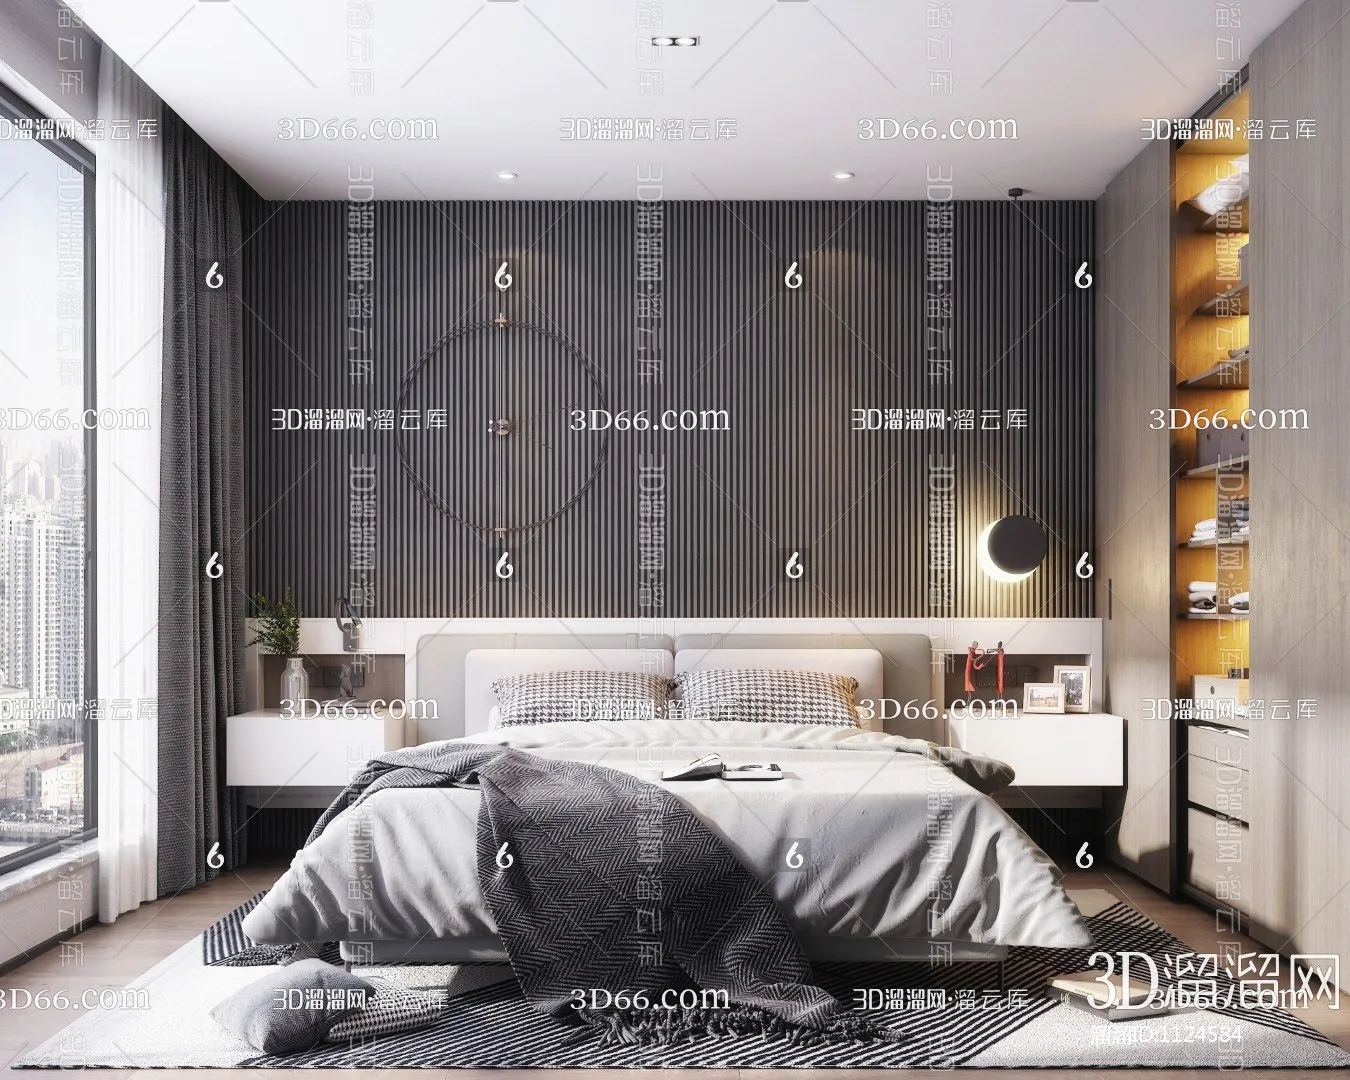 Bedroom 3D Scenes – 0183